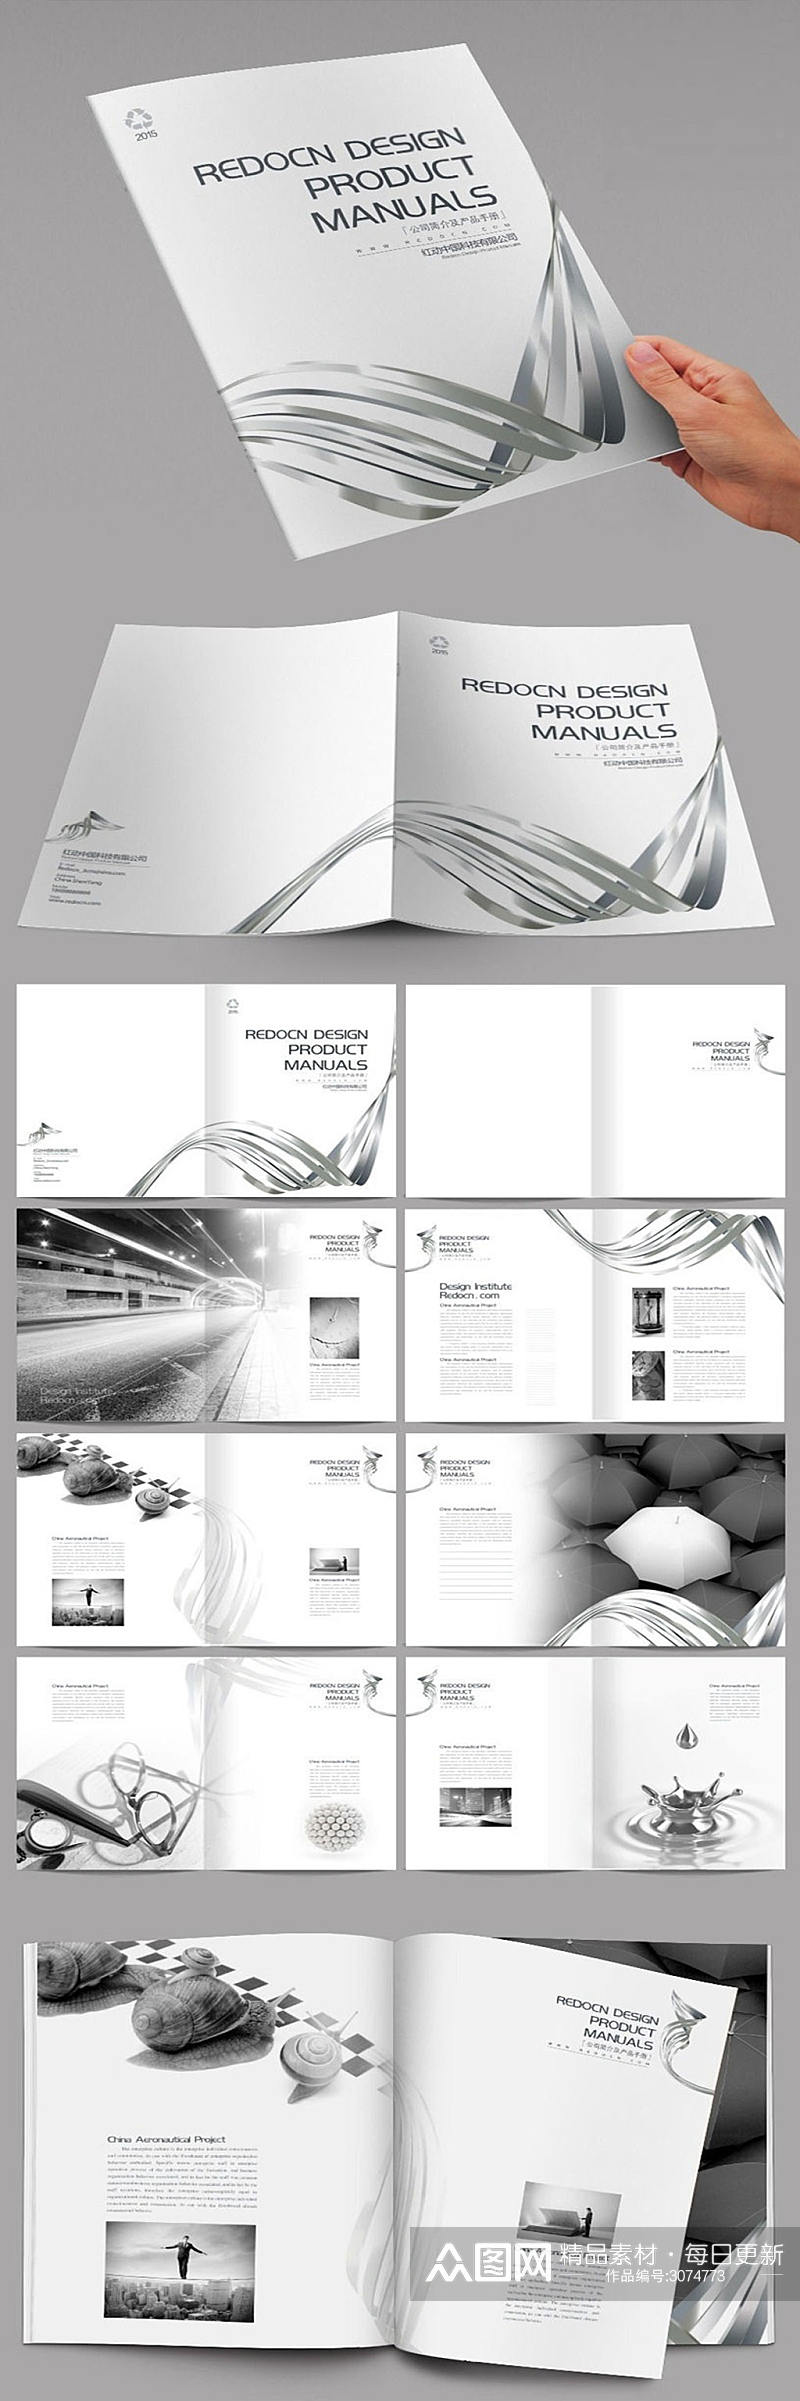 黑白简约企业画册设计素材